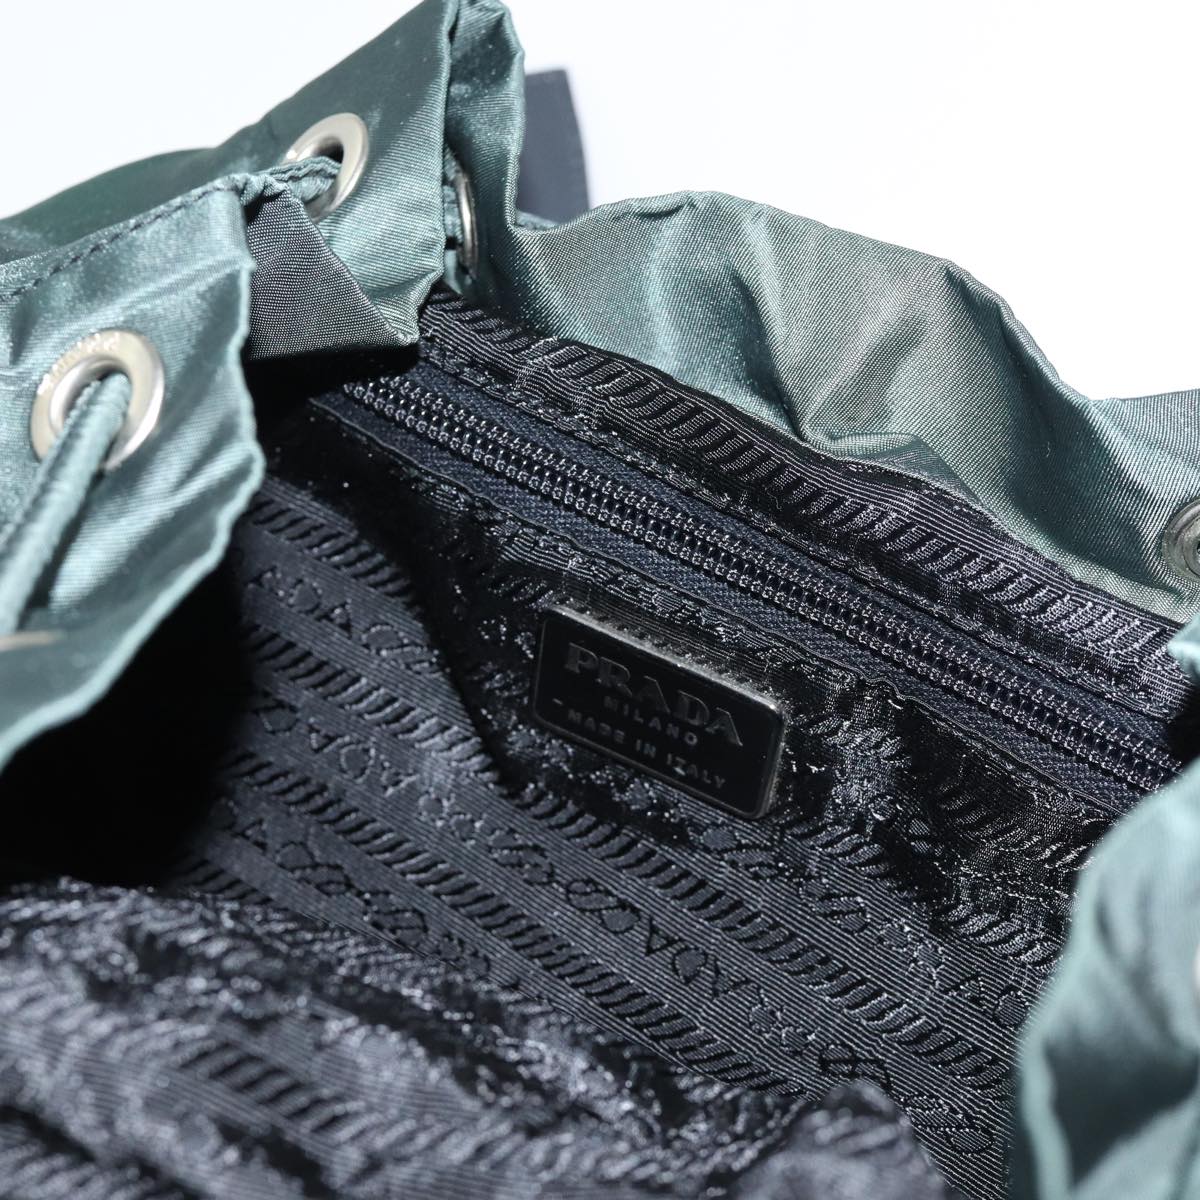 PRADA Backpack Nylon Green Auth ep3736